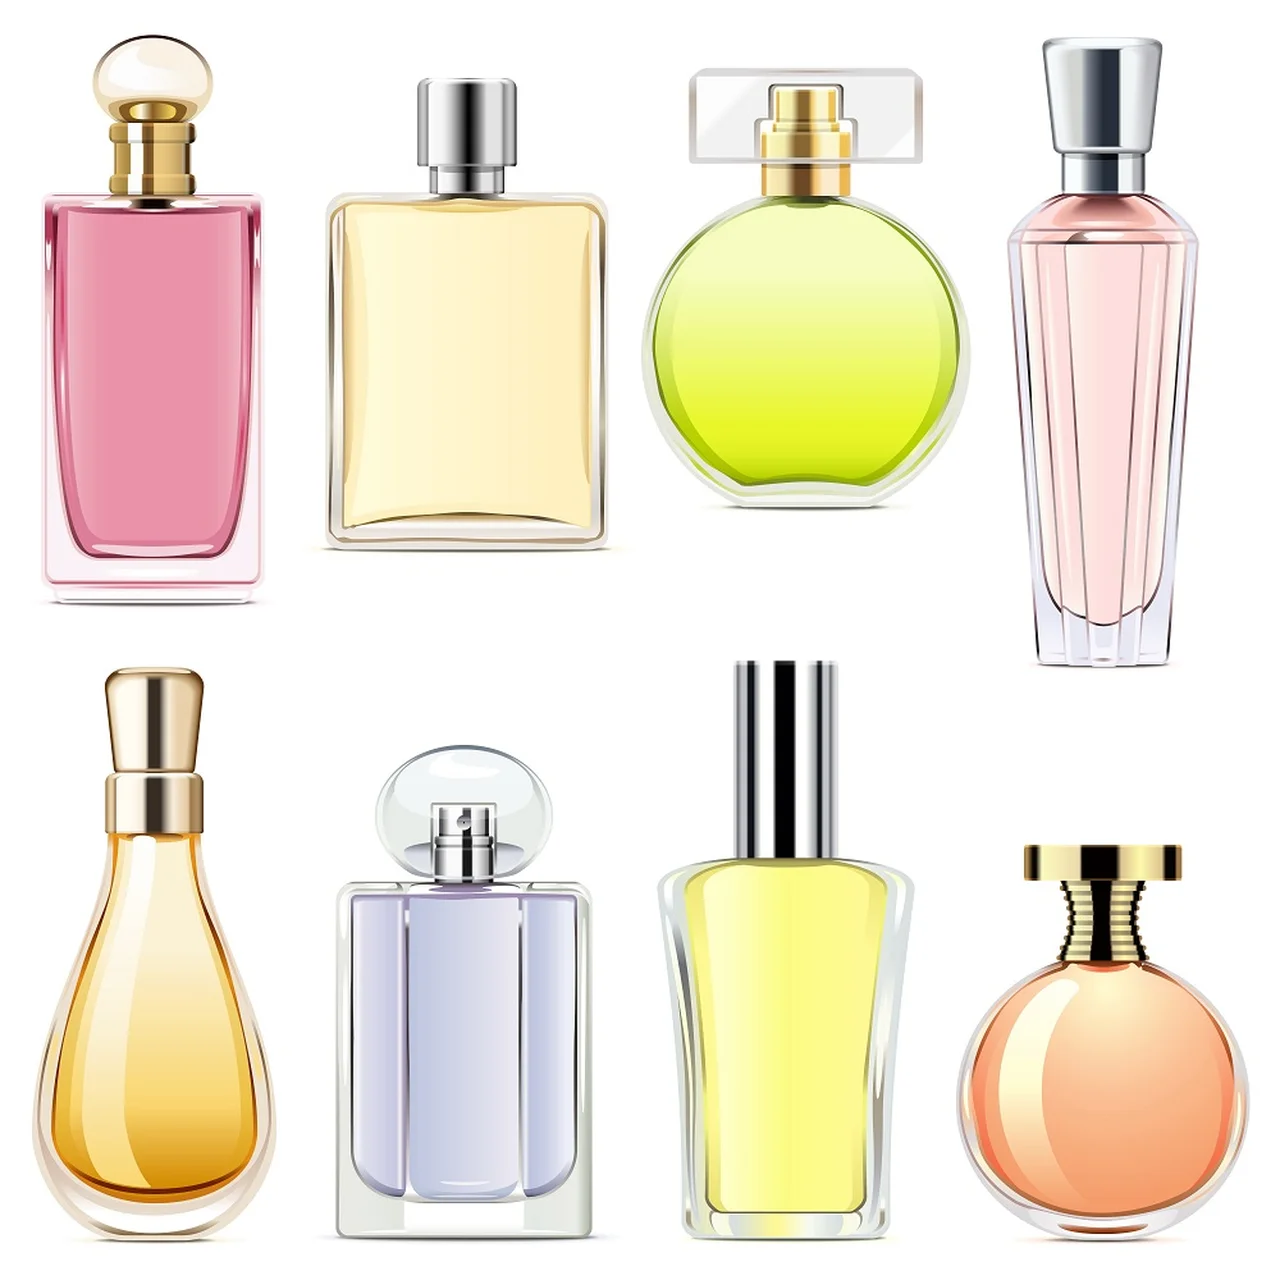 Jak przechowywać perfumy, aby ich zapach zbyt szybko się nie ulotnił?